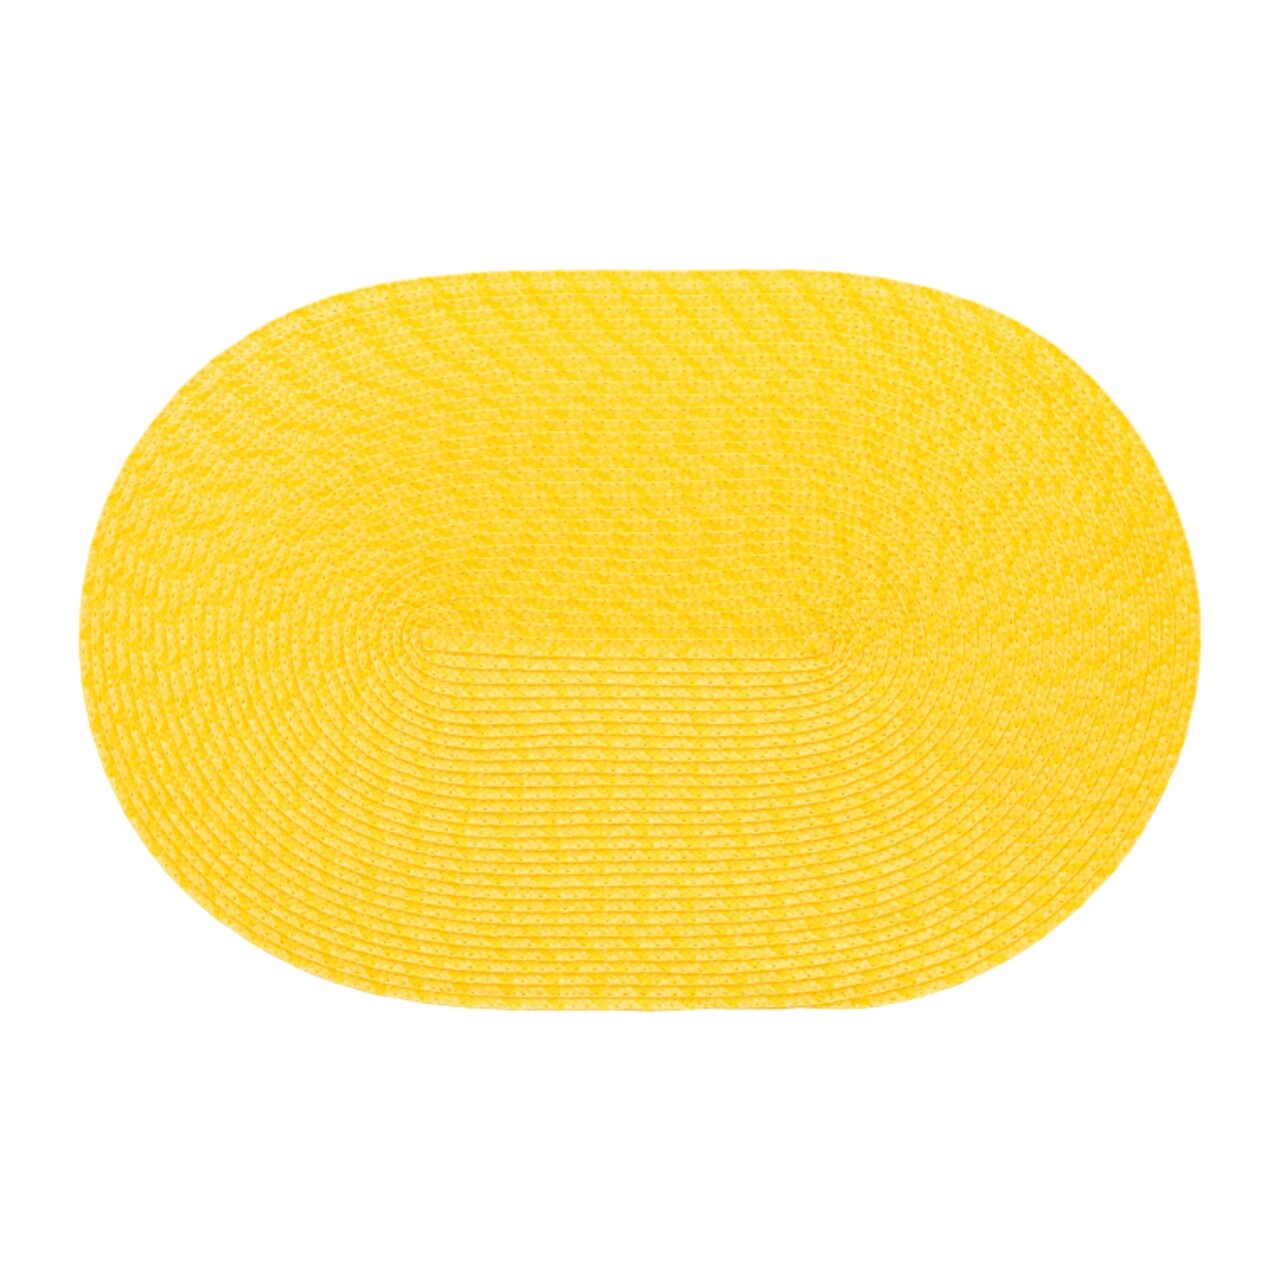 Édes tányértartó, Ambition, 30x45 cm, műanyag, sárga